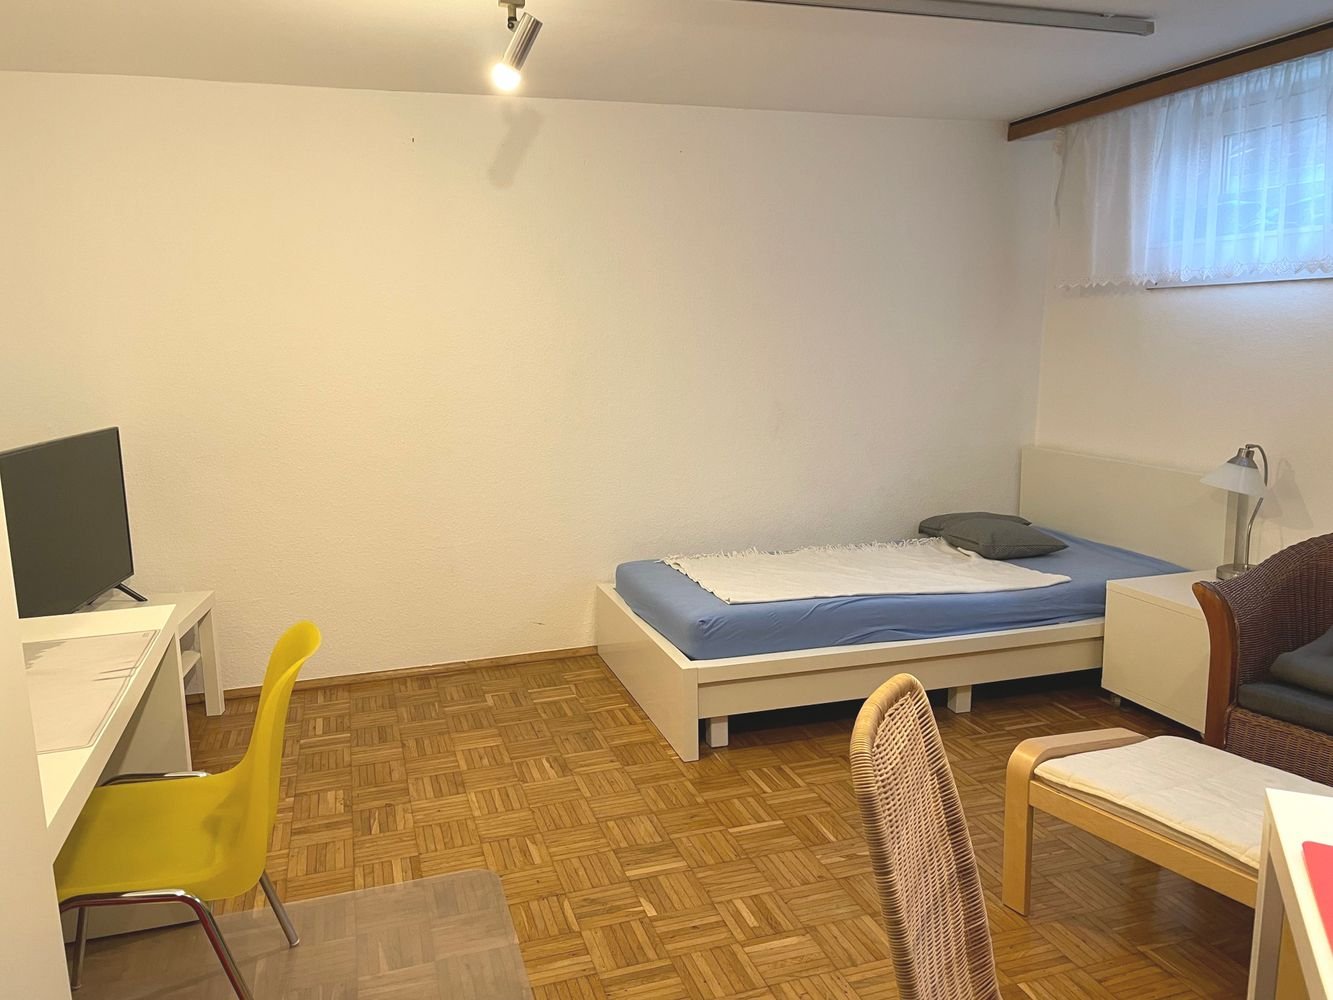 Kleines möbliertes Apartment für Pendler oder Singles - Siegburg